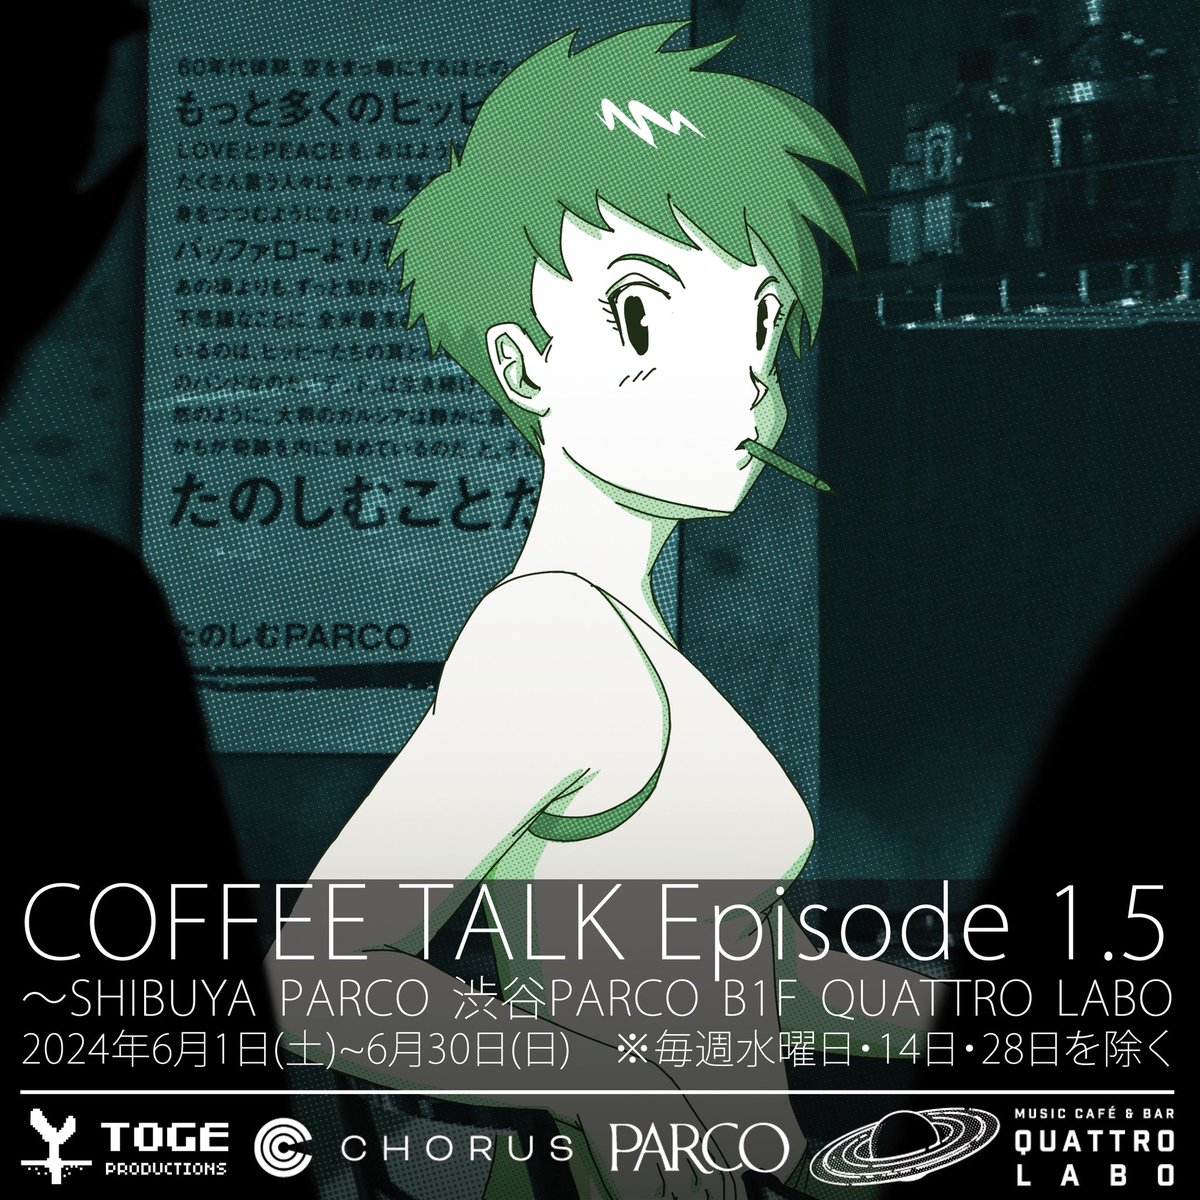 昨日発表がありました【COFFEE TALK Episode 1.5～SHIBUYA PARCO】に、たくさんのご関心をお寄せいただき、ほっとしております。先月、発表の予告をさせていただいておりました、”コーヒートークでの新たな試み”とはこちらのコラボイベントのことでした。…